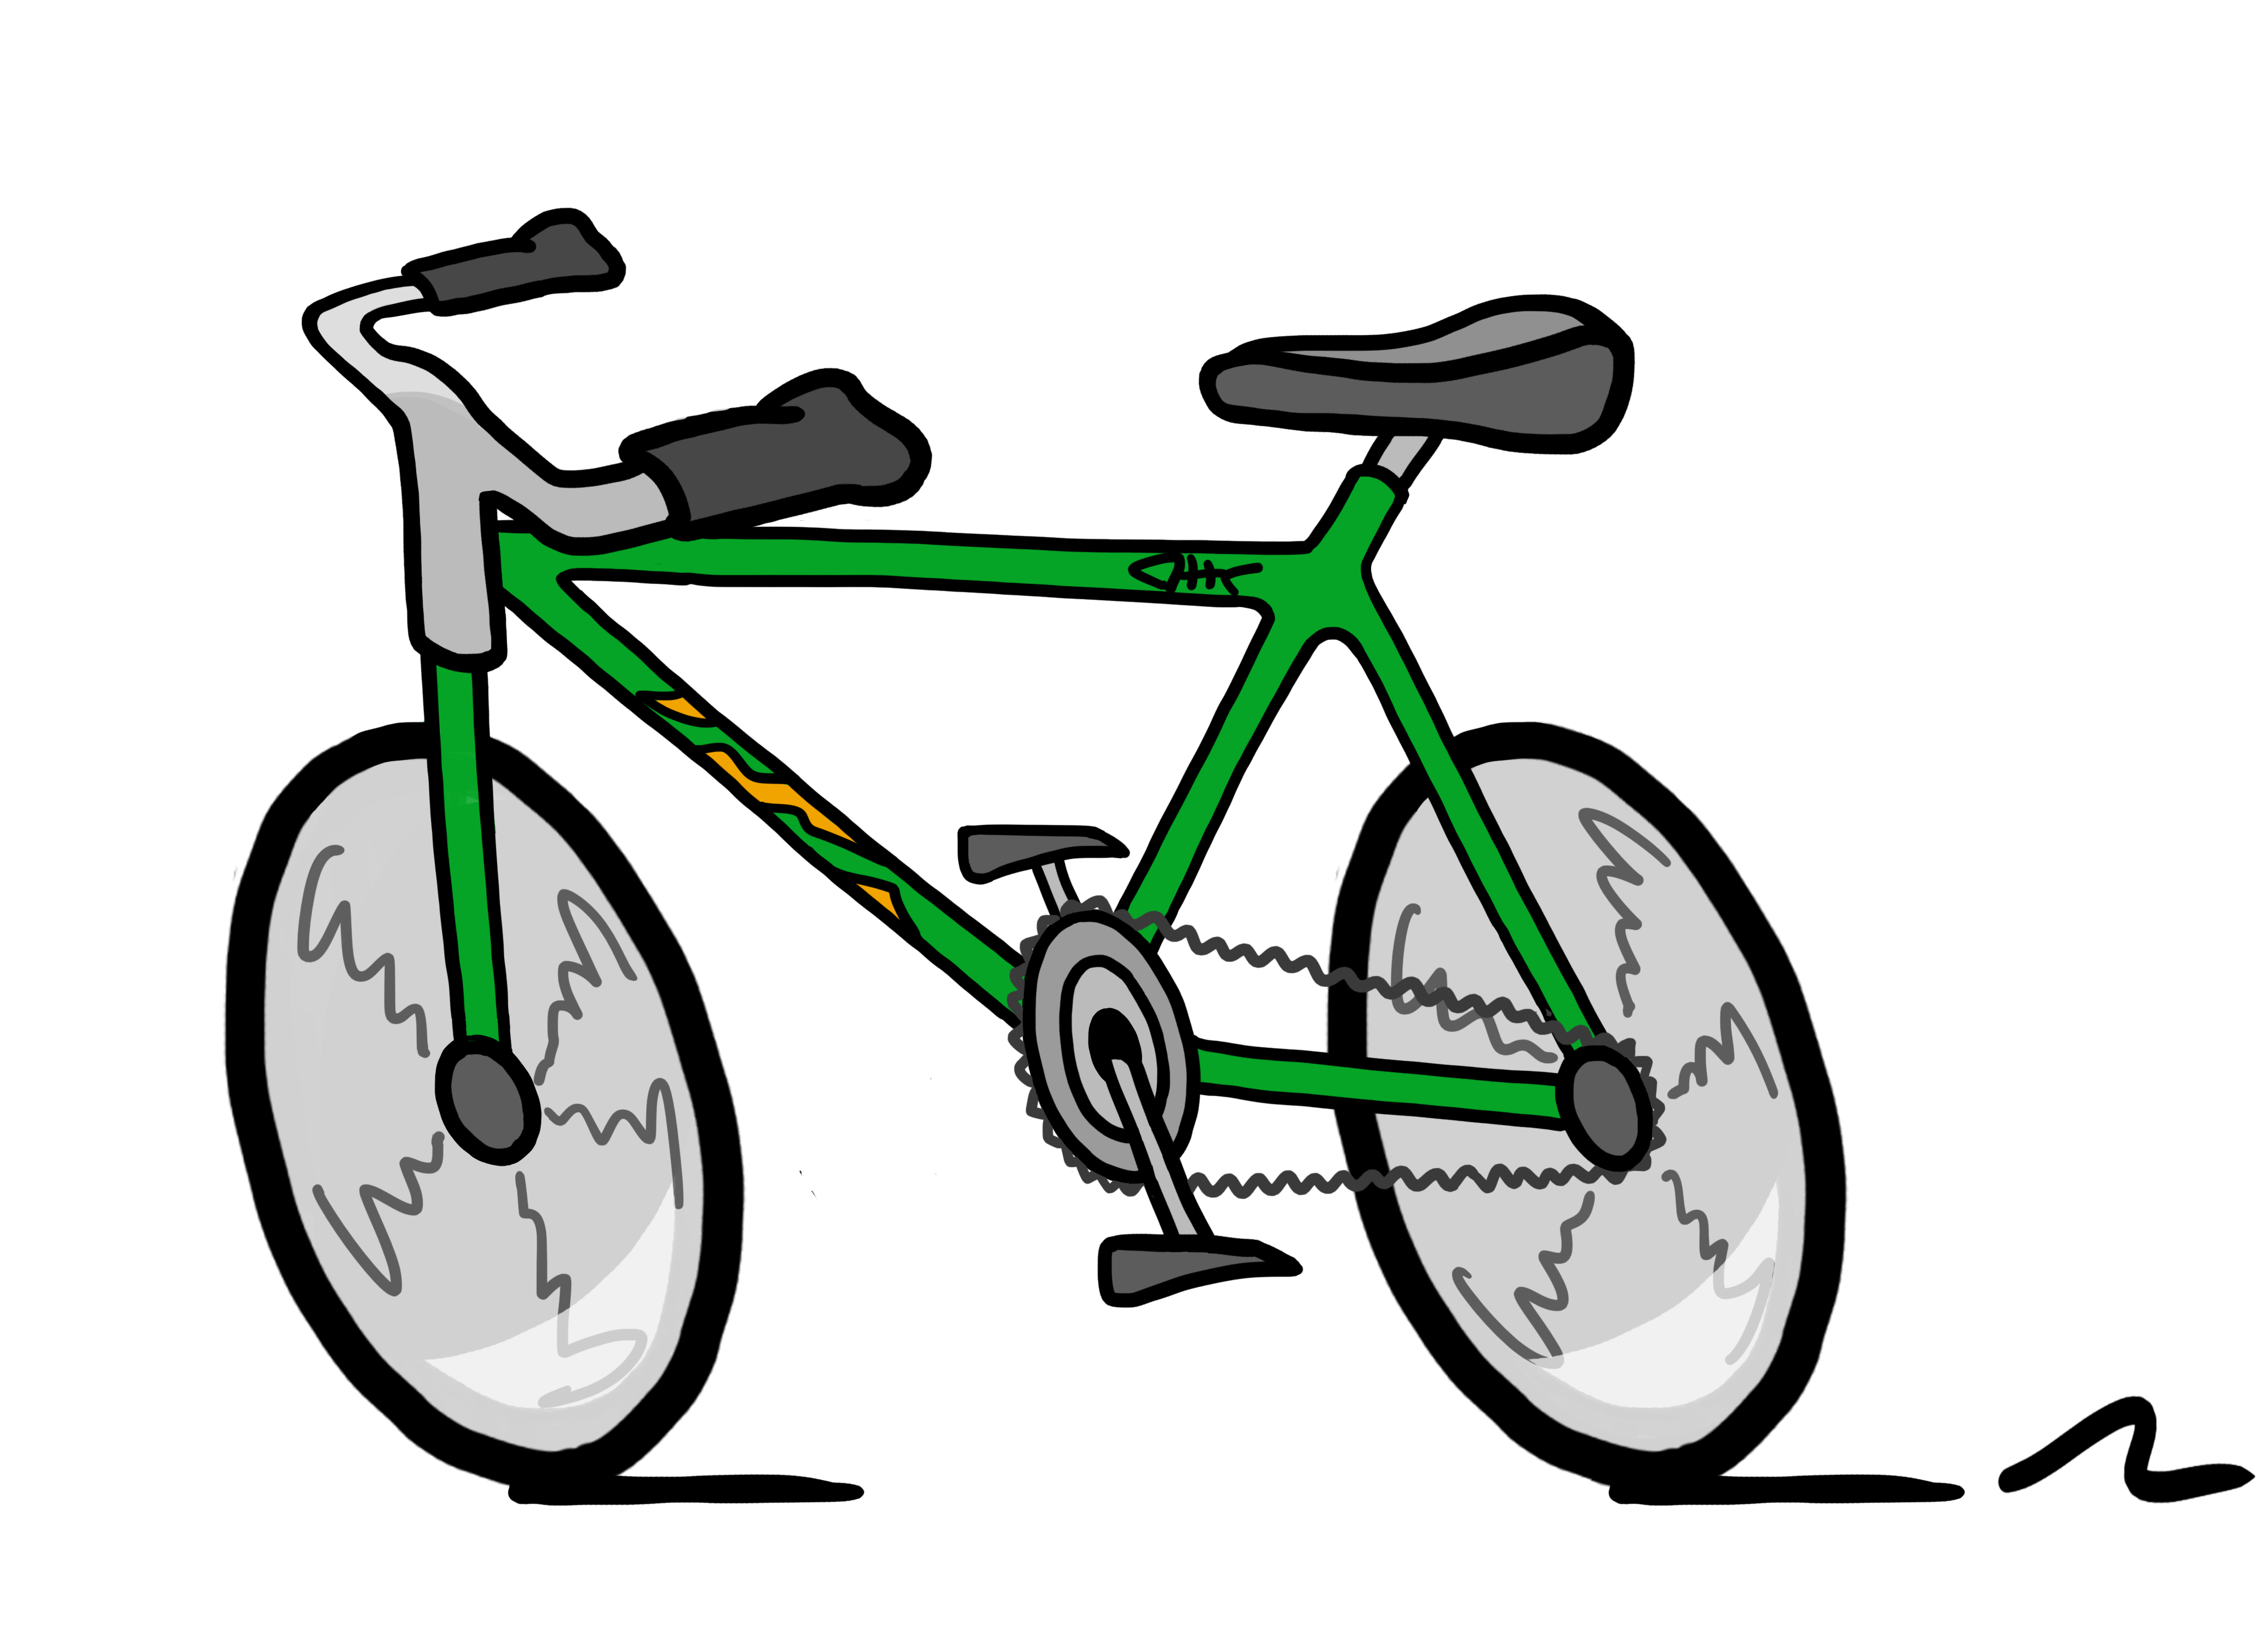 I have a new bike. Велосипед рисунок. Нарисовать велосипед. Велосипед на прозрачном фоне. Велосипед мультяшный.